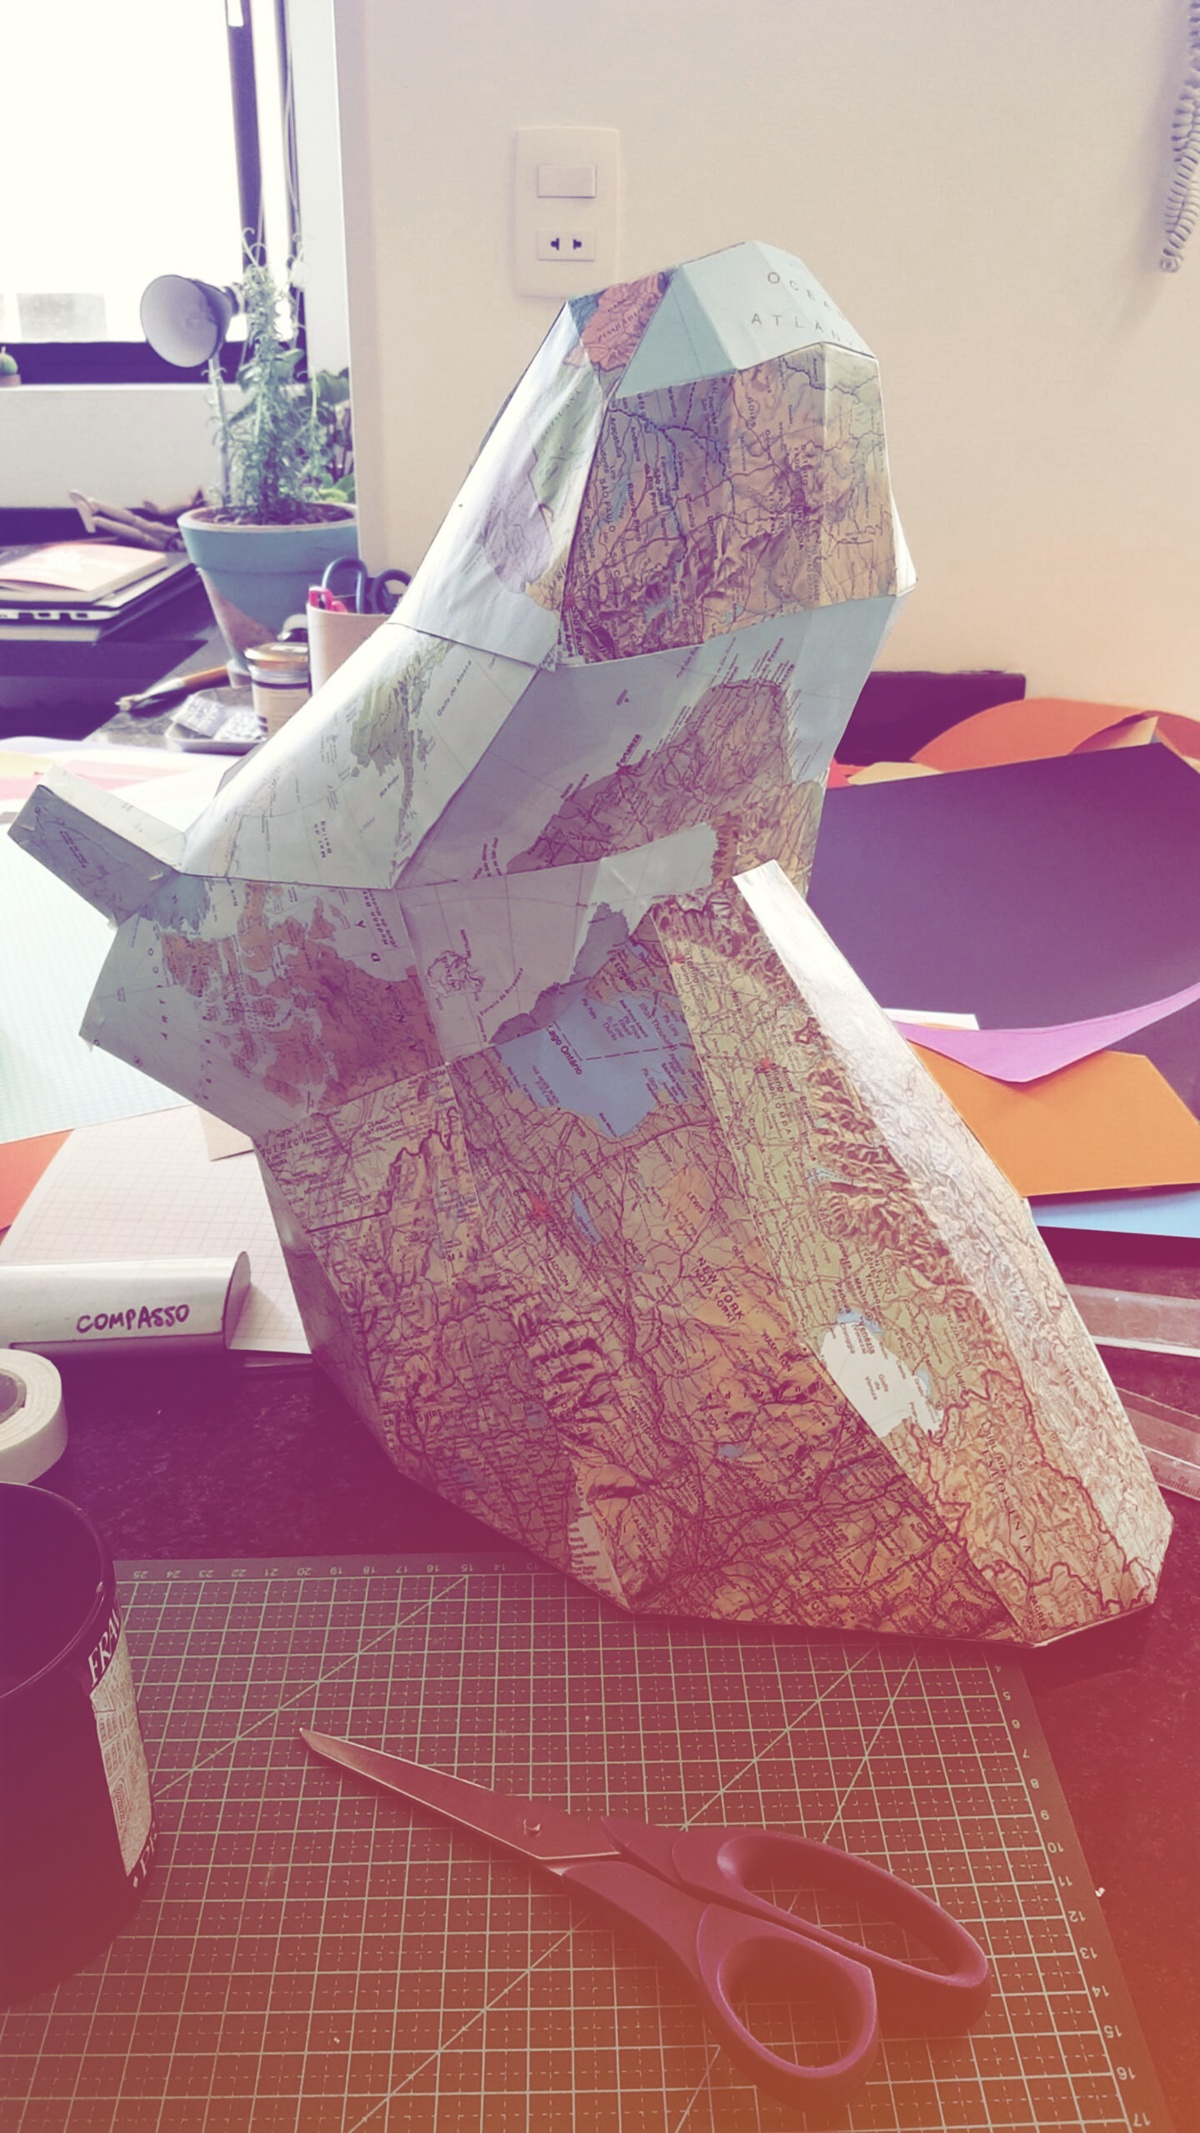 papercraft paper art animal head Horn map world surface